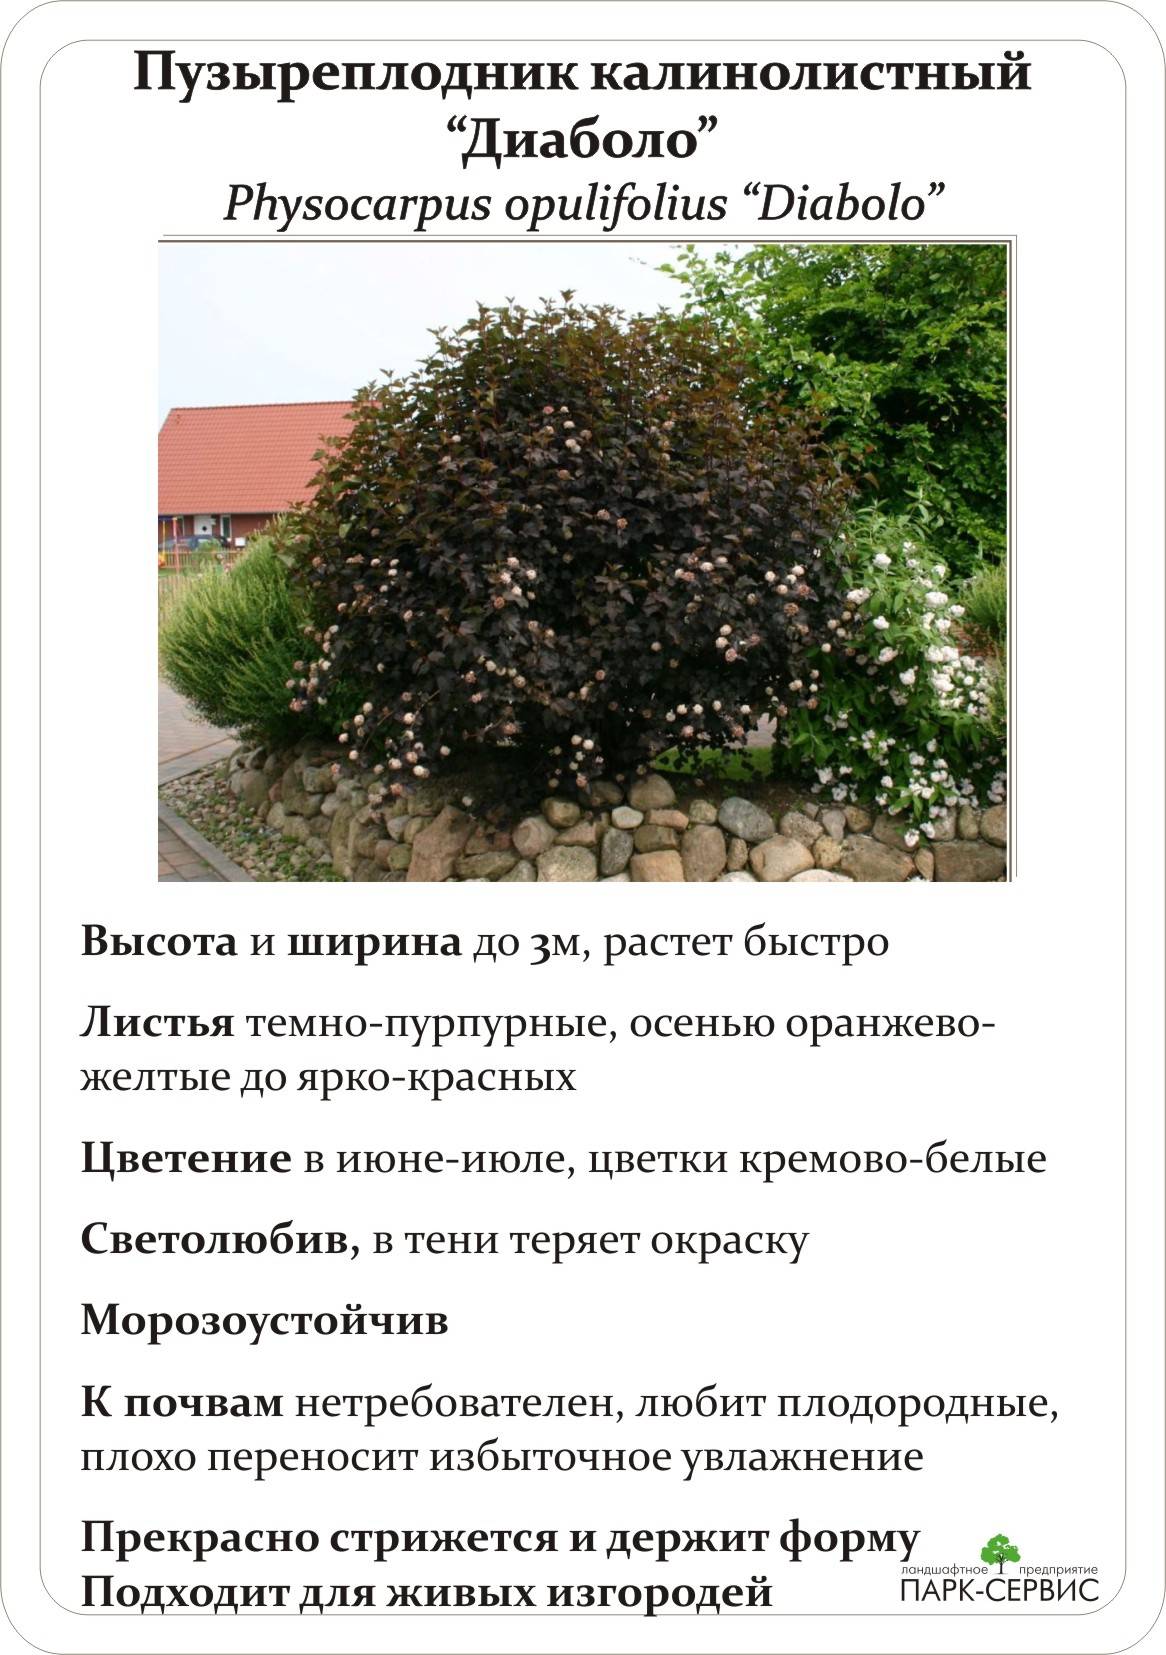 Пузыреплодник: посадка и уход в открытом грунте, виды и сорта, фото